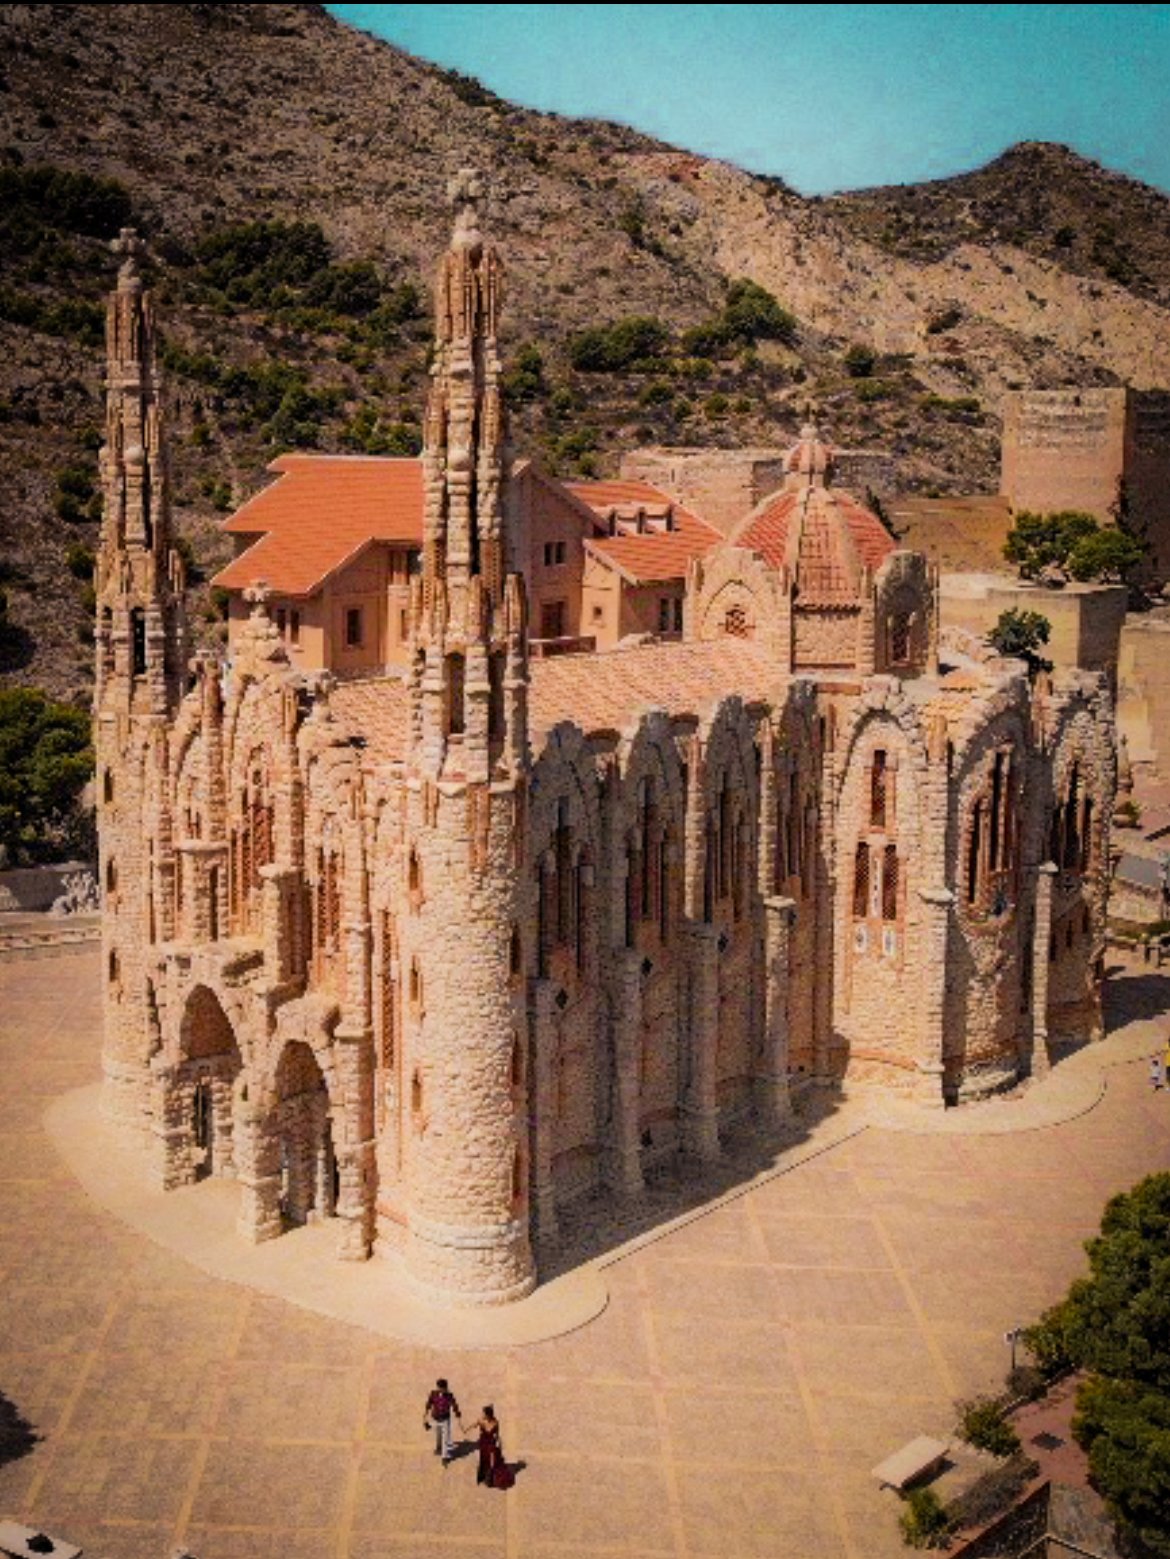 Santuario Santa Maria Magdalena, Costa Blanca in Spain